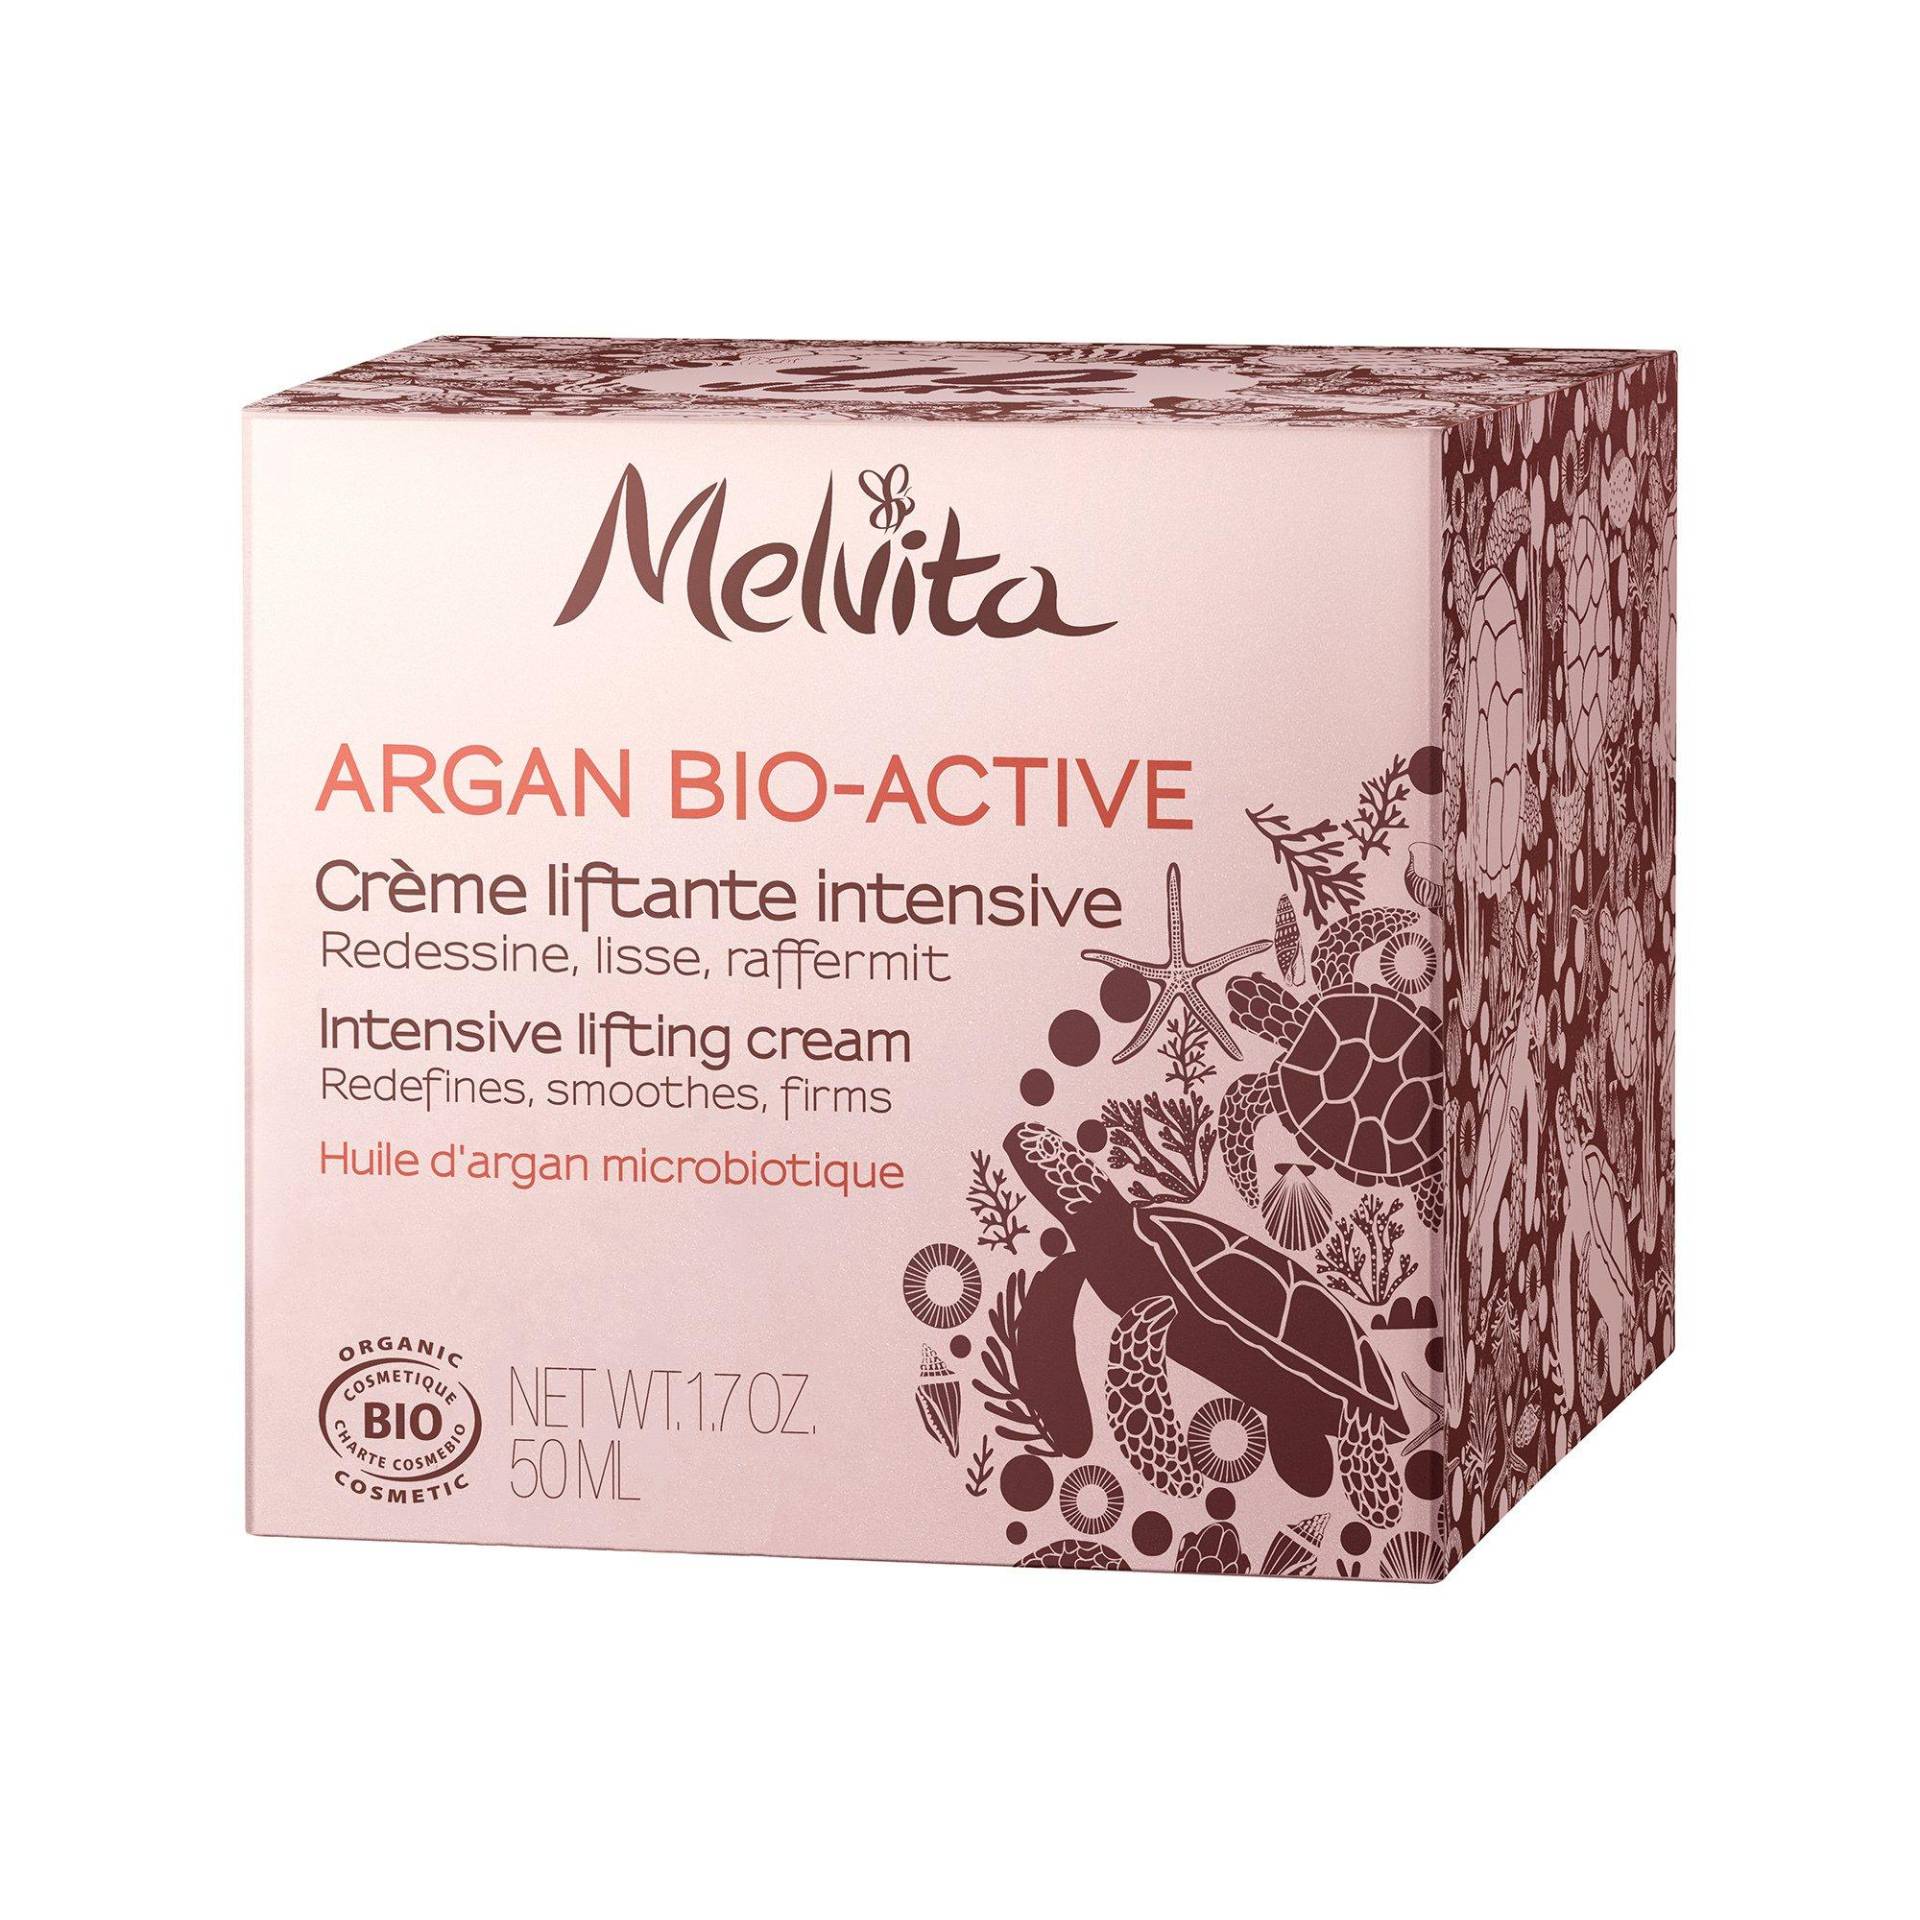 Argan Bio-active Liftende Intensiv Creme Damen  50ml von Melvita